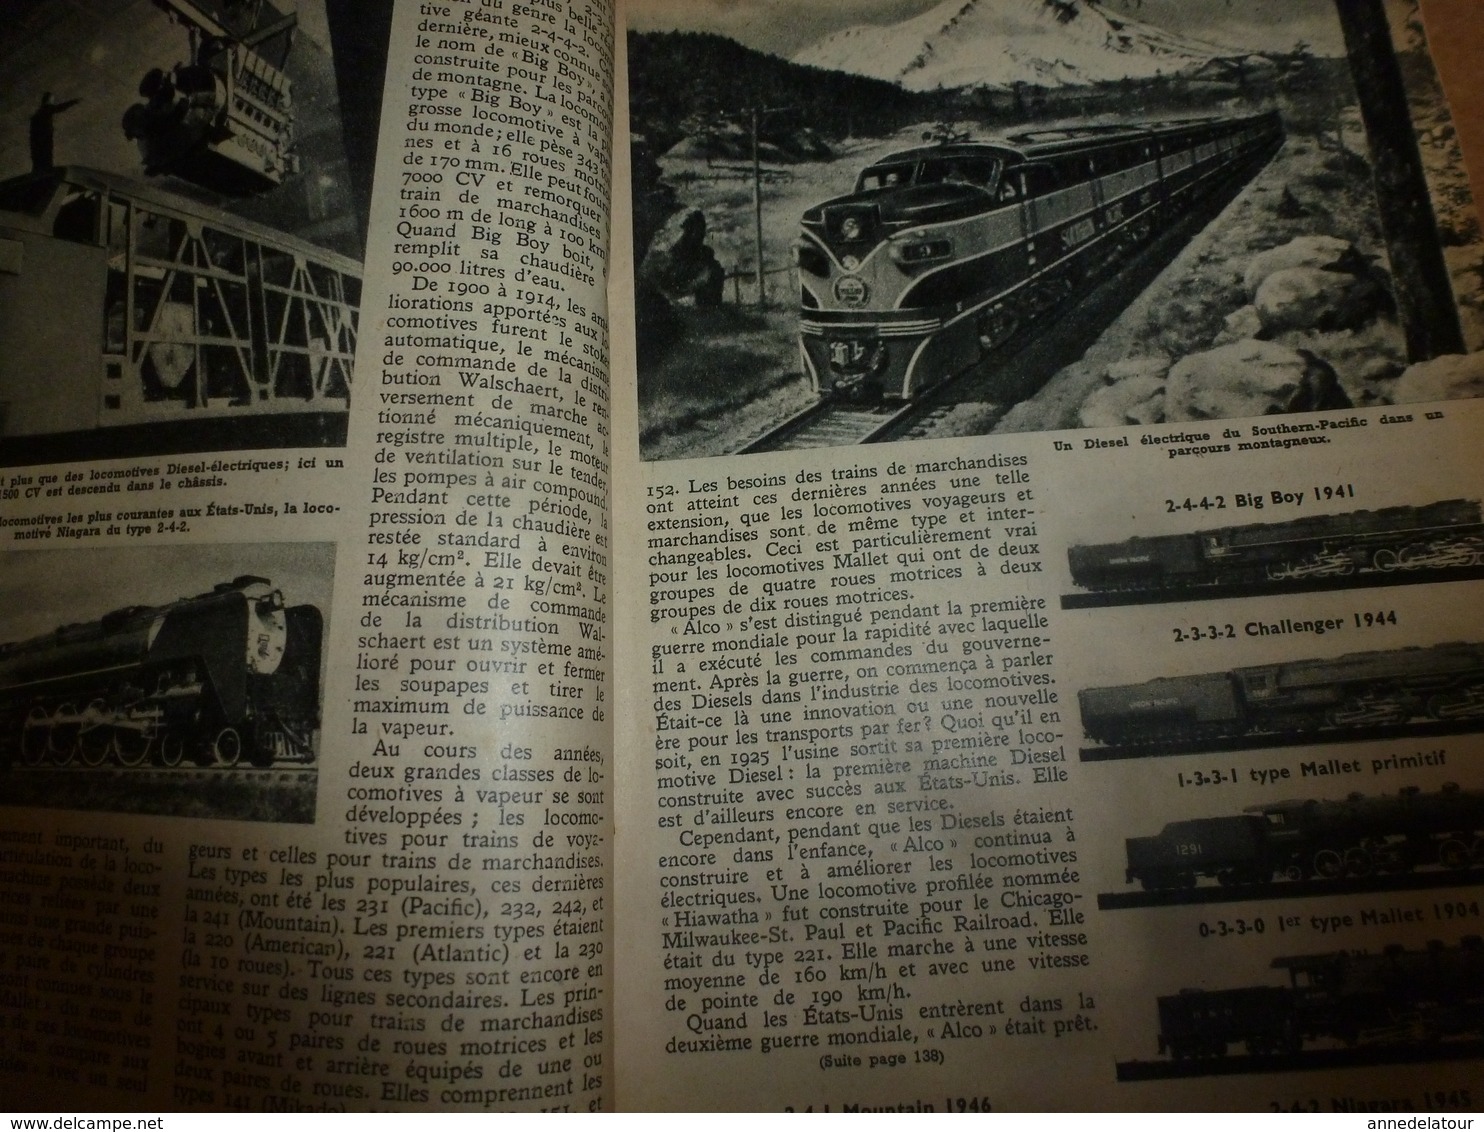 1949 MÉCANIQUE POPULAIRE:Publicité par Pipo;Les locomotives américaines;Faire lunette de tir;Diminuer conso essence;etc